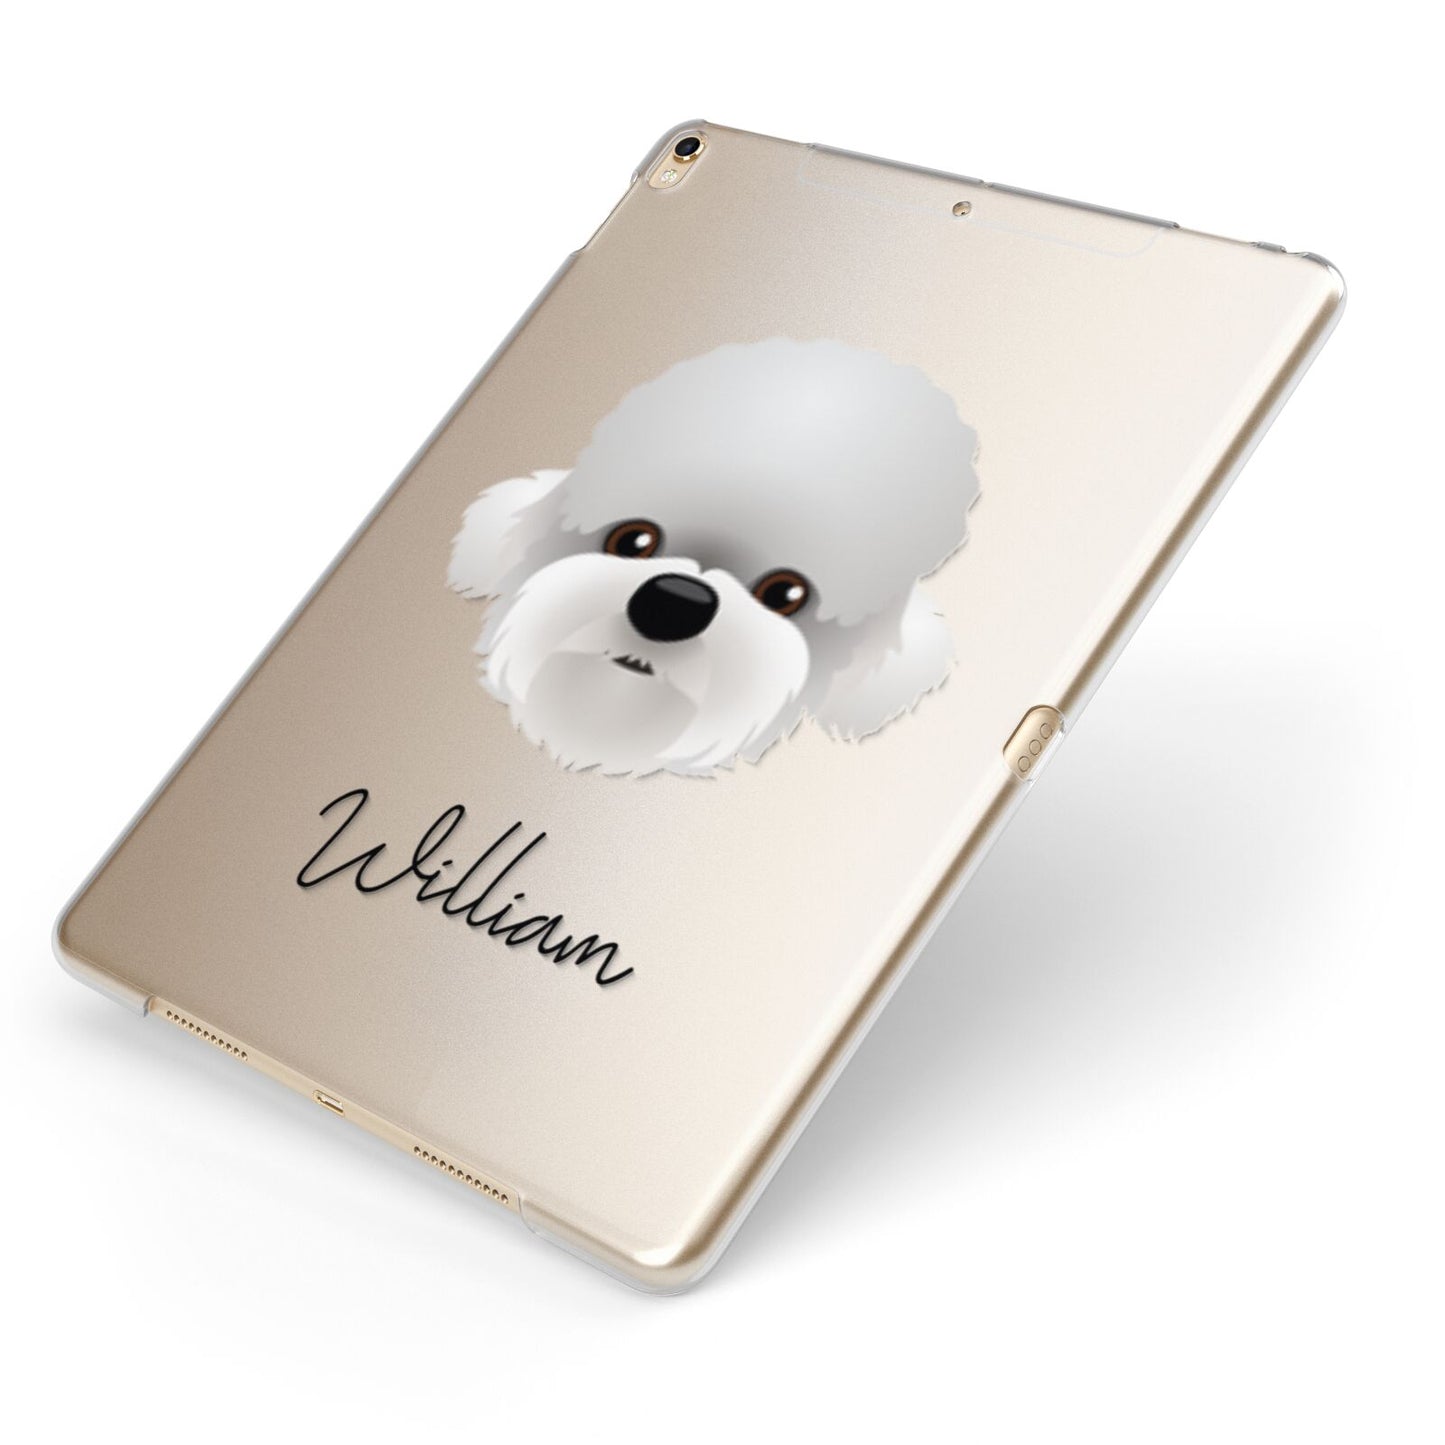 Dandie Dinmont Terrier Personalised Apple iPad Case on Gold iPad Side View